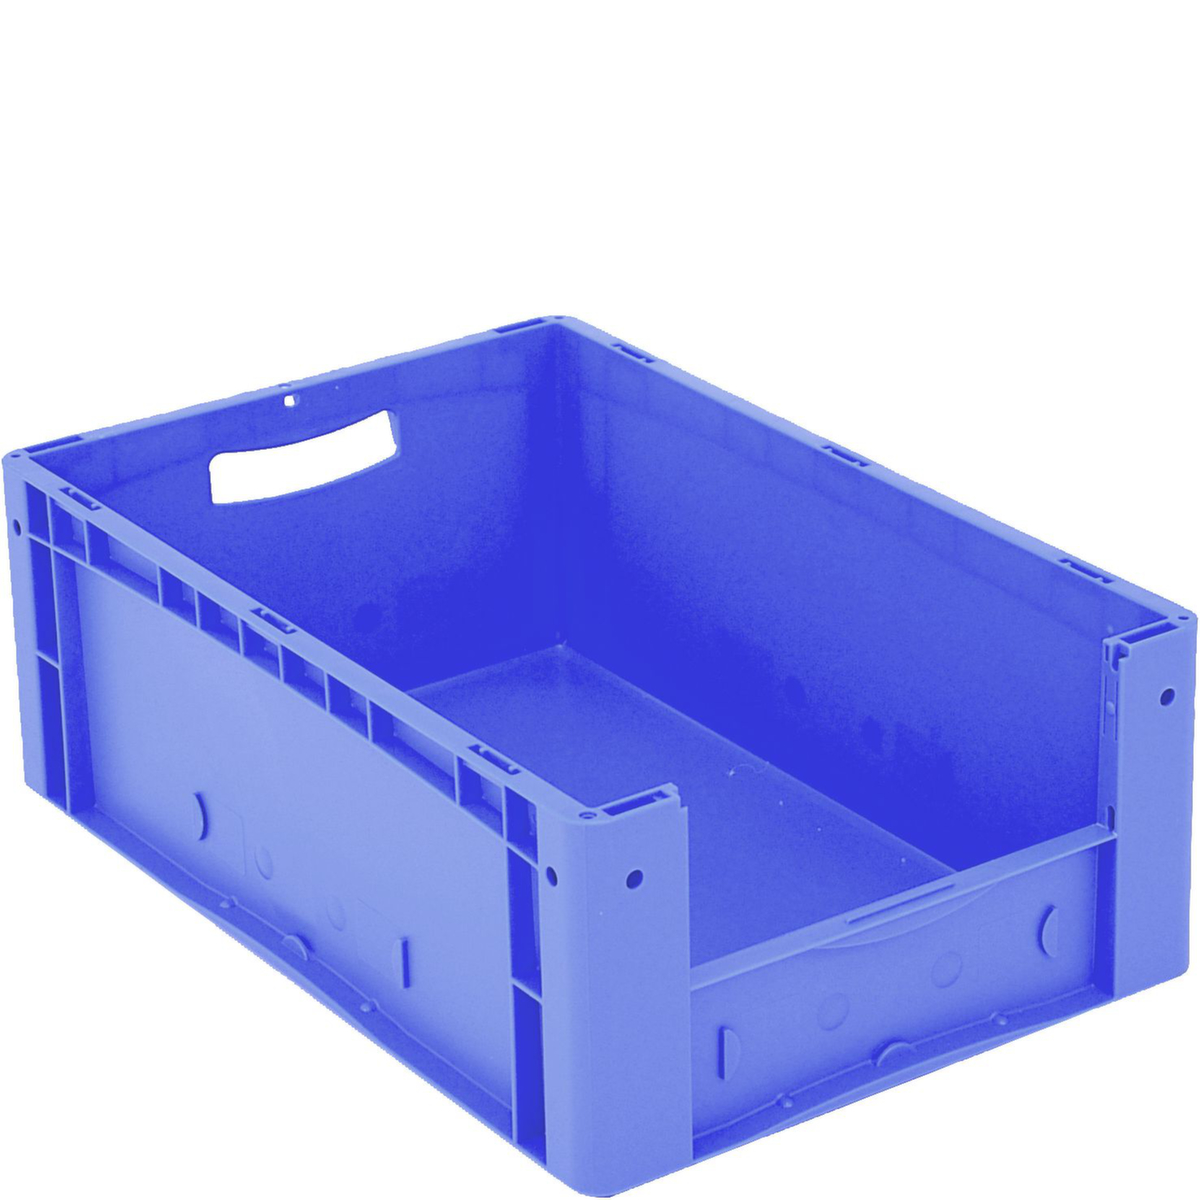 Euronorm zichtbare opslagcontainer met toegangsopening, blauw, HxLxB 220x600x400 mm  ZOOM